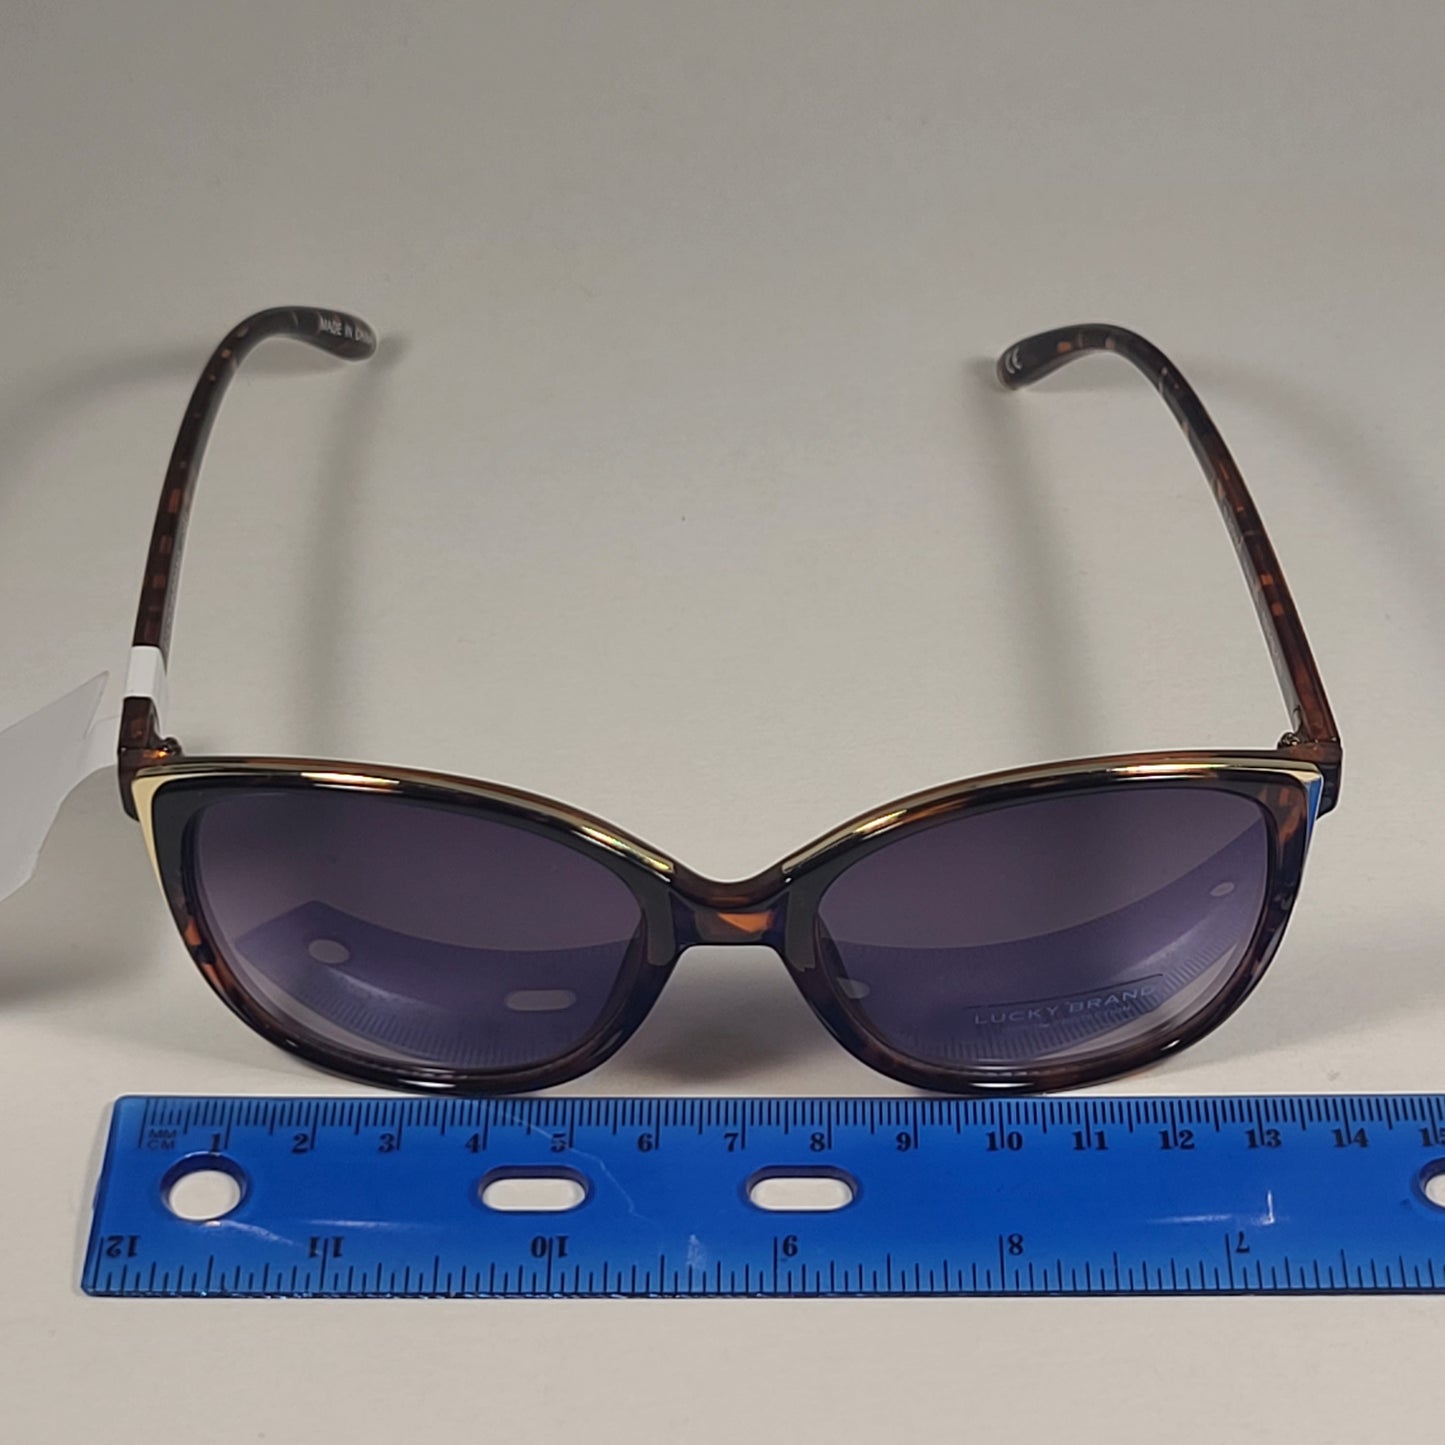 Lucky Brand SLBD101 Cat Eye Sunglasses Havana Tortoise Frame Smoke Gradient Lens